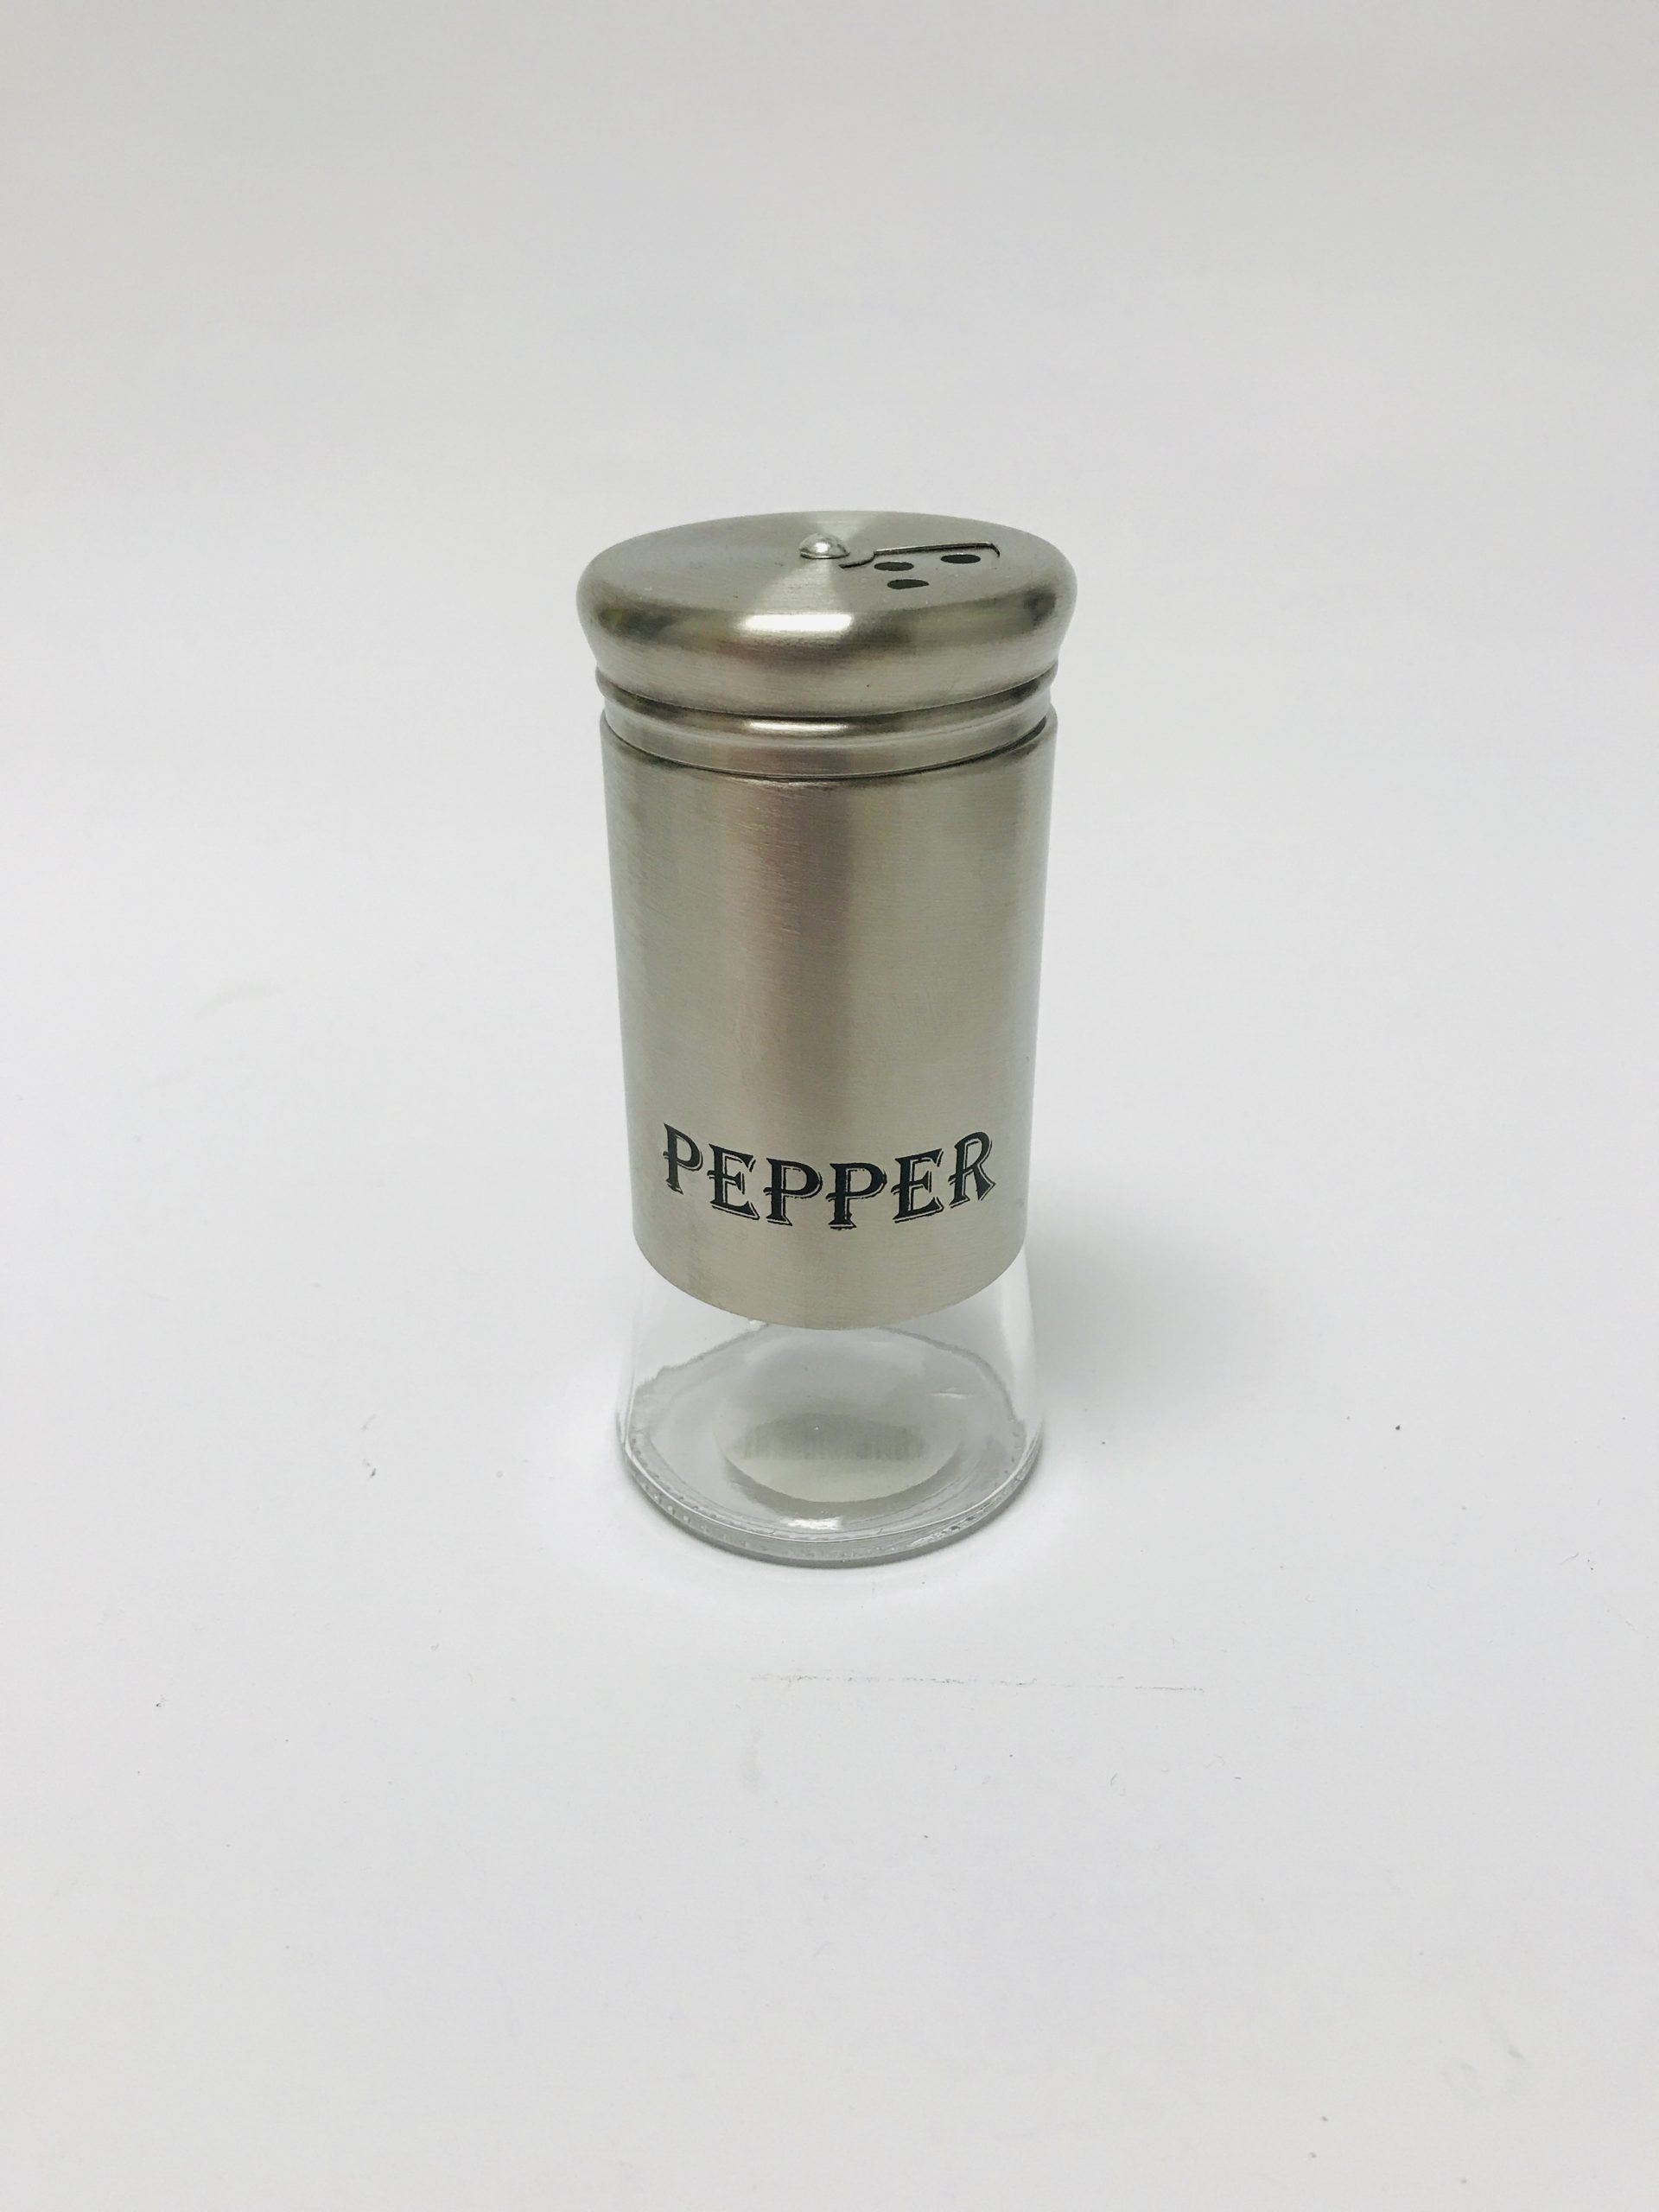 https://www.aldergrovegeneral.com/wp-content/uploads/2021/07/pepper-shaker-3.49-scaled.jpg